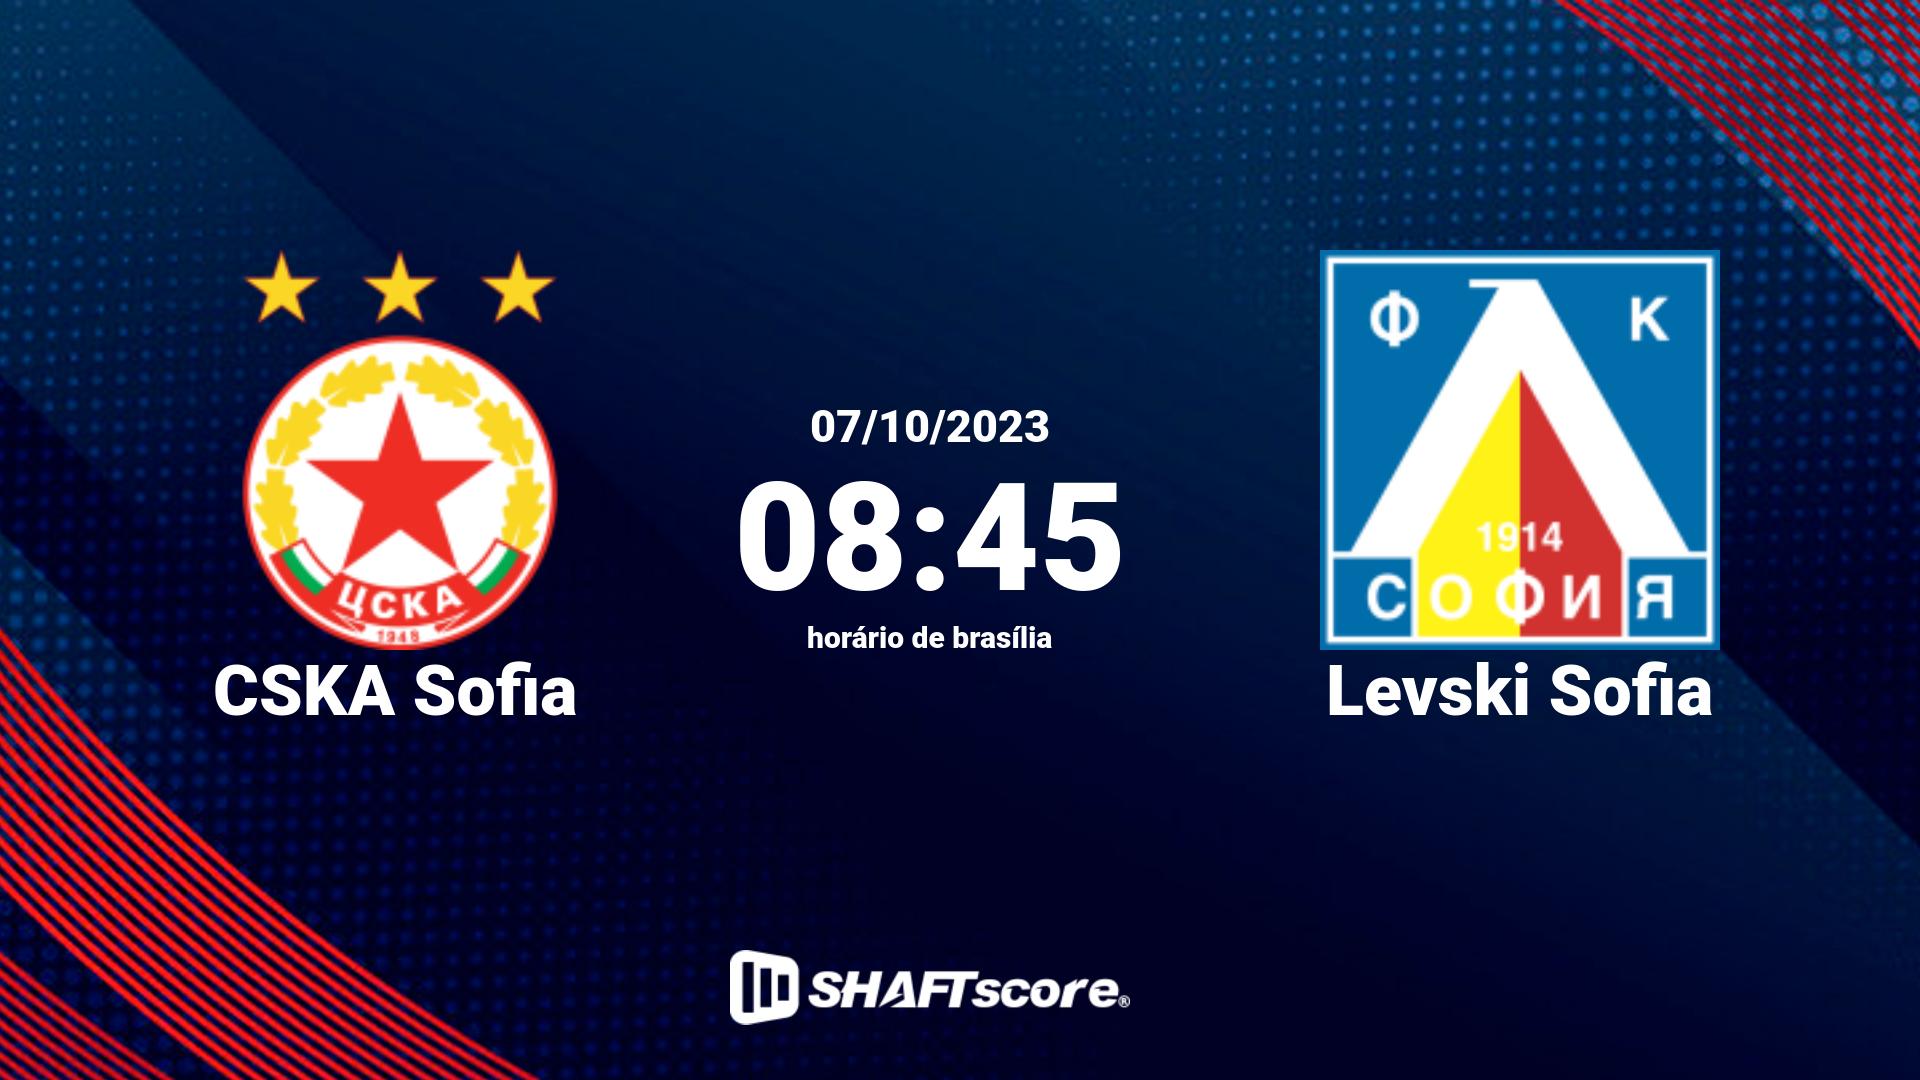 Estatísticas do jogo CSKA Sofia vs Levski Sofia 07.10 08:45